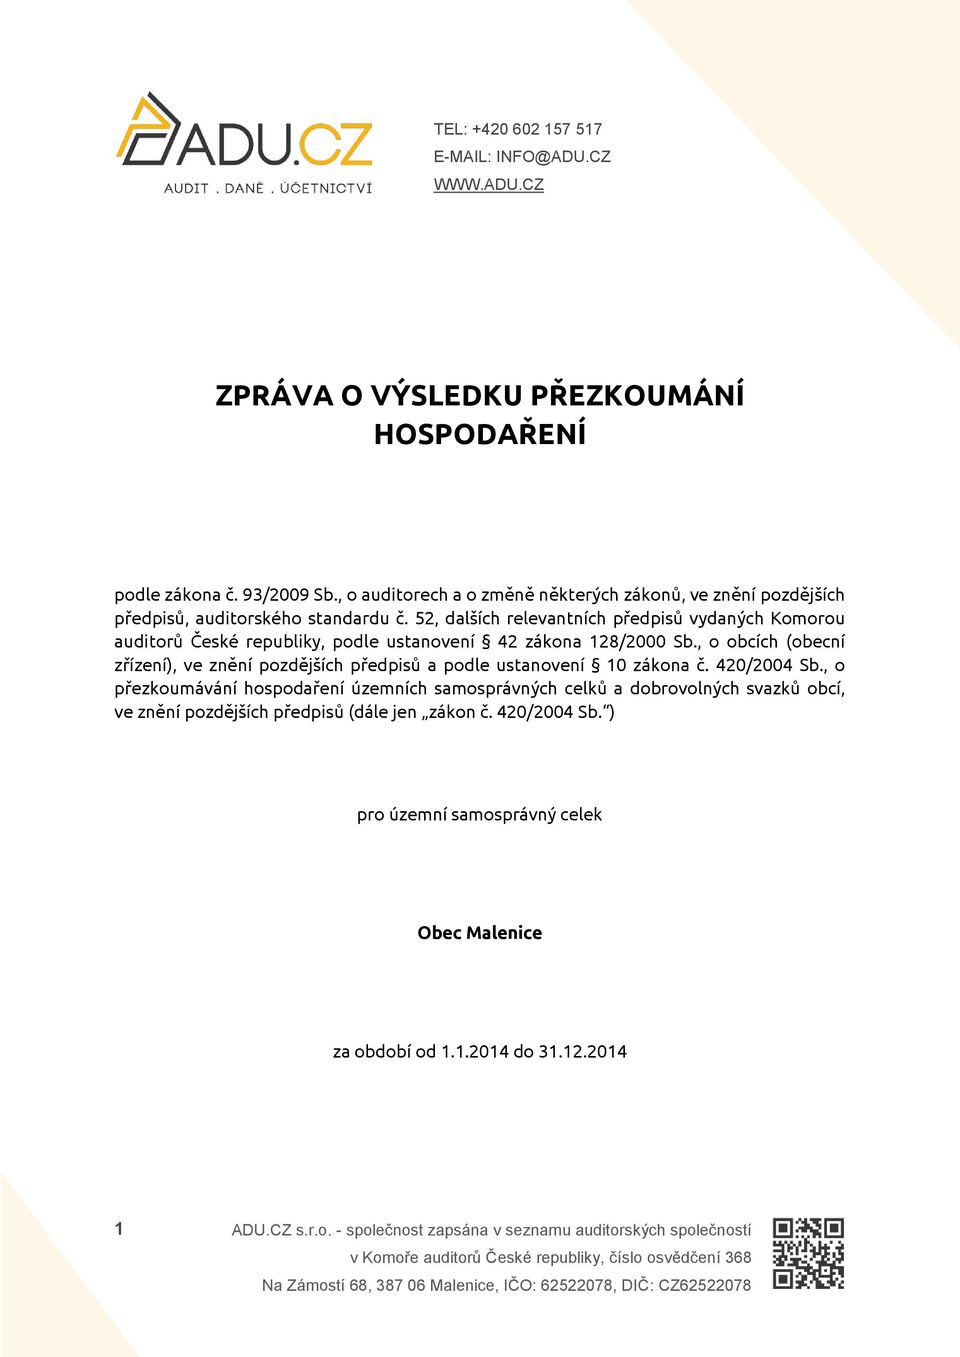 52, dalších relevantních předpisů vydaných Komorou auditorů České republiky, podle ustanovení 42 zákona 128/2000 Sb.